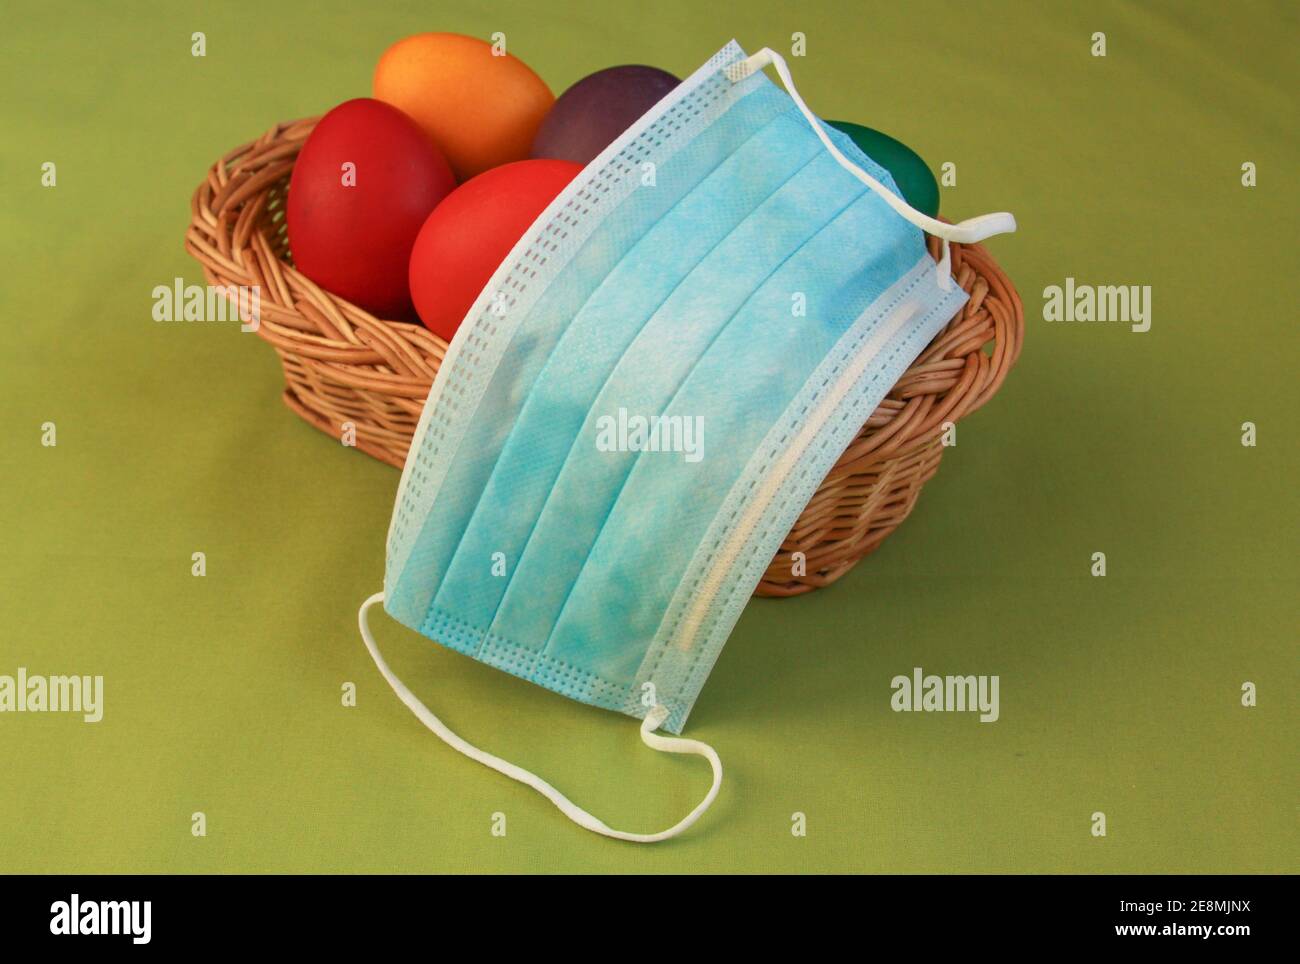 Huevos de Pascua pintados de color aislados en la decoración de la cesta de madera con máscara quirúrgica, un símbolo de la pandemia del coronavirus. Semana Santa 2020 covid 19 brote c Foto de stock